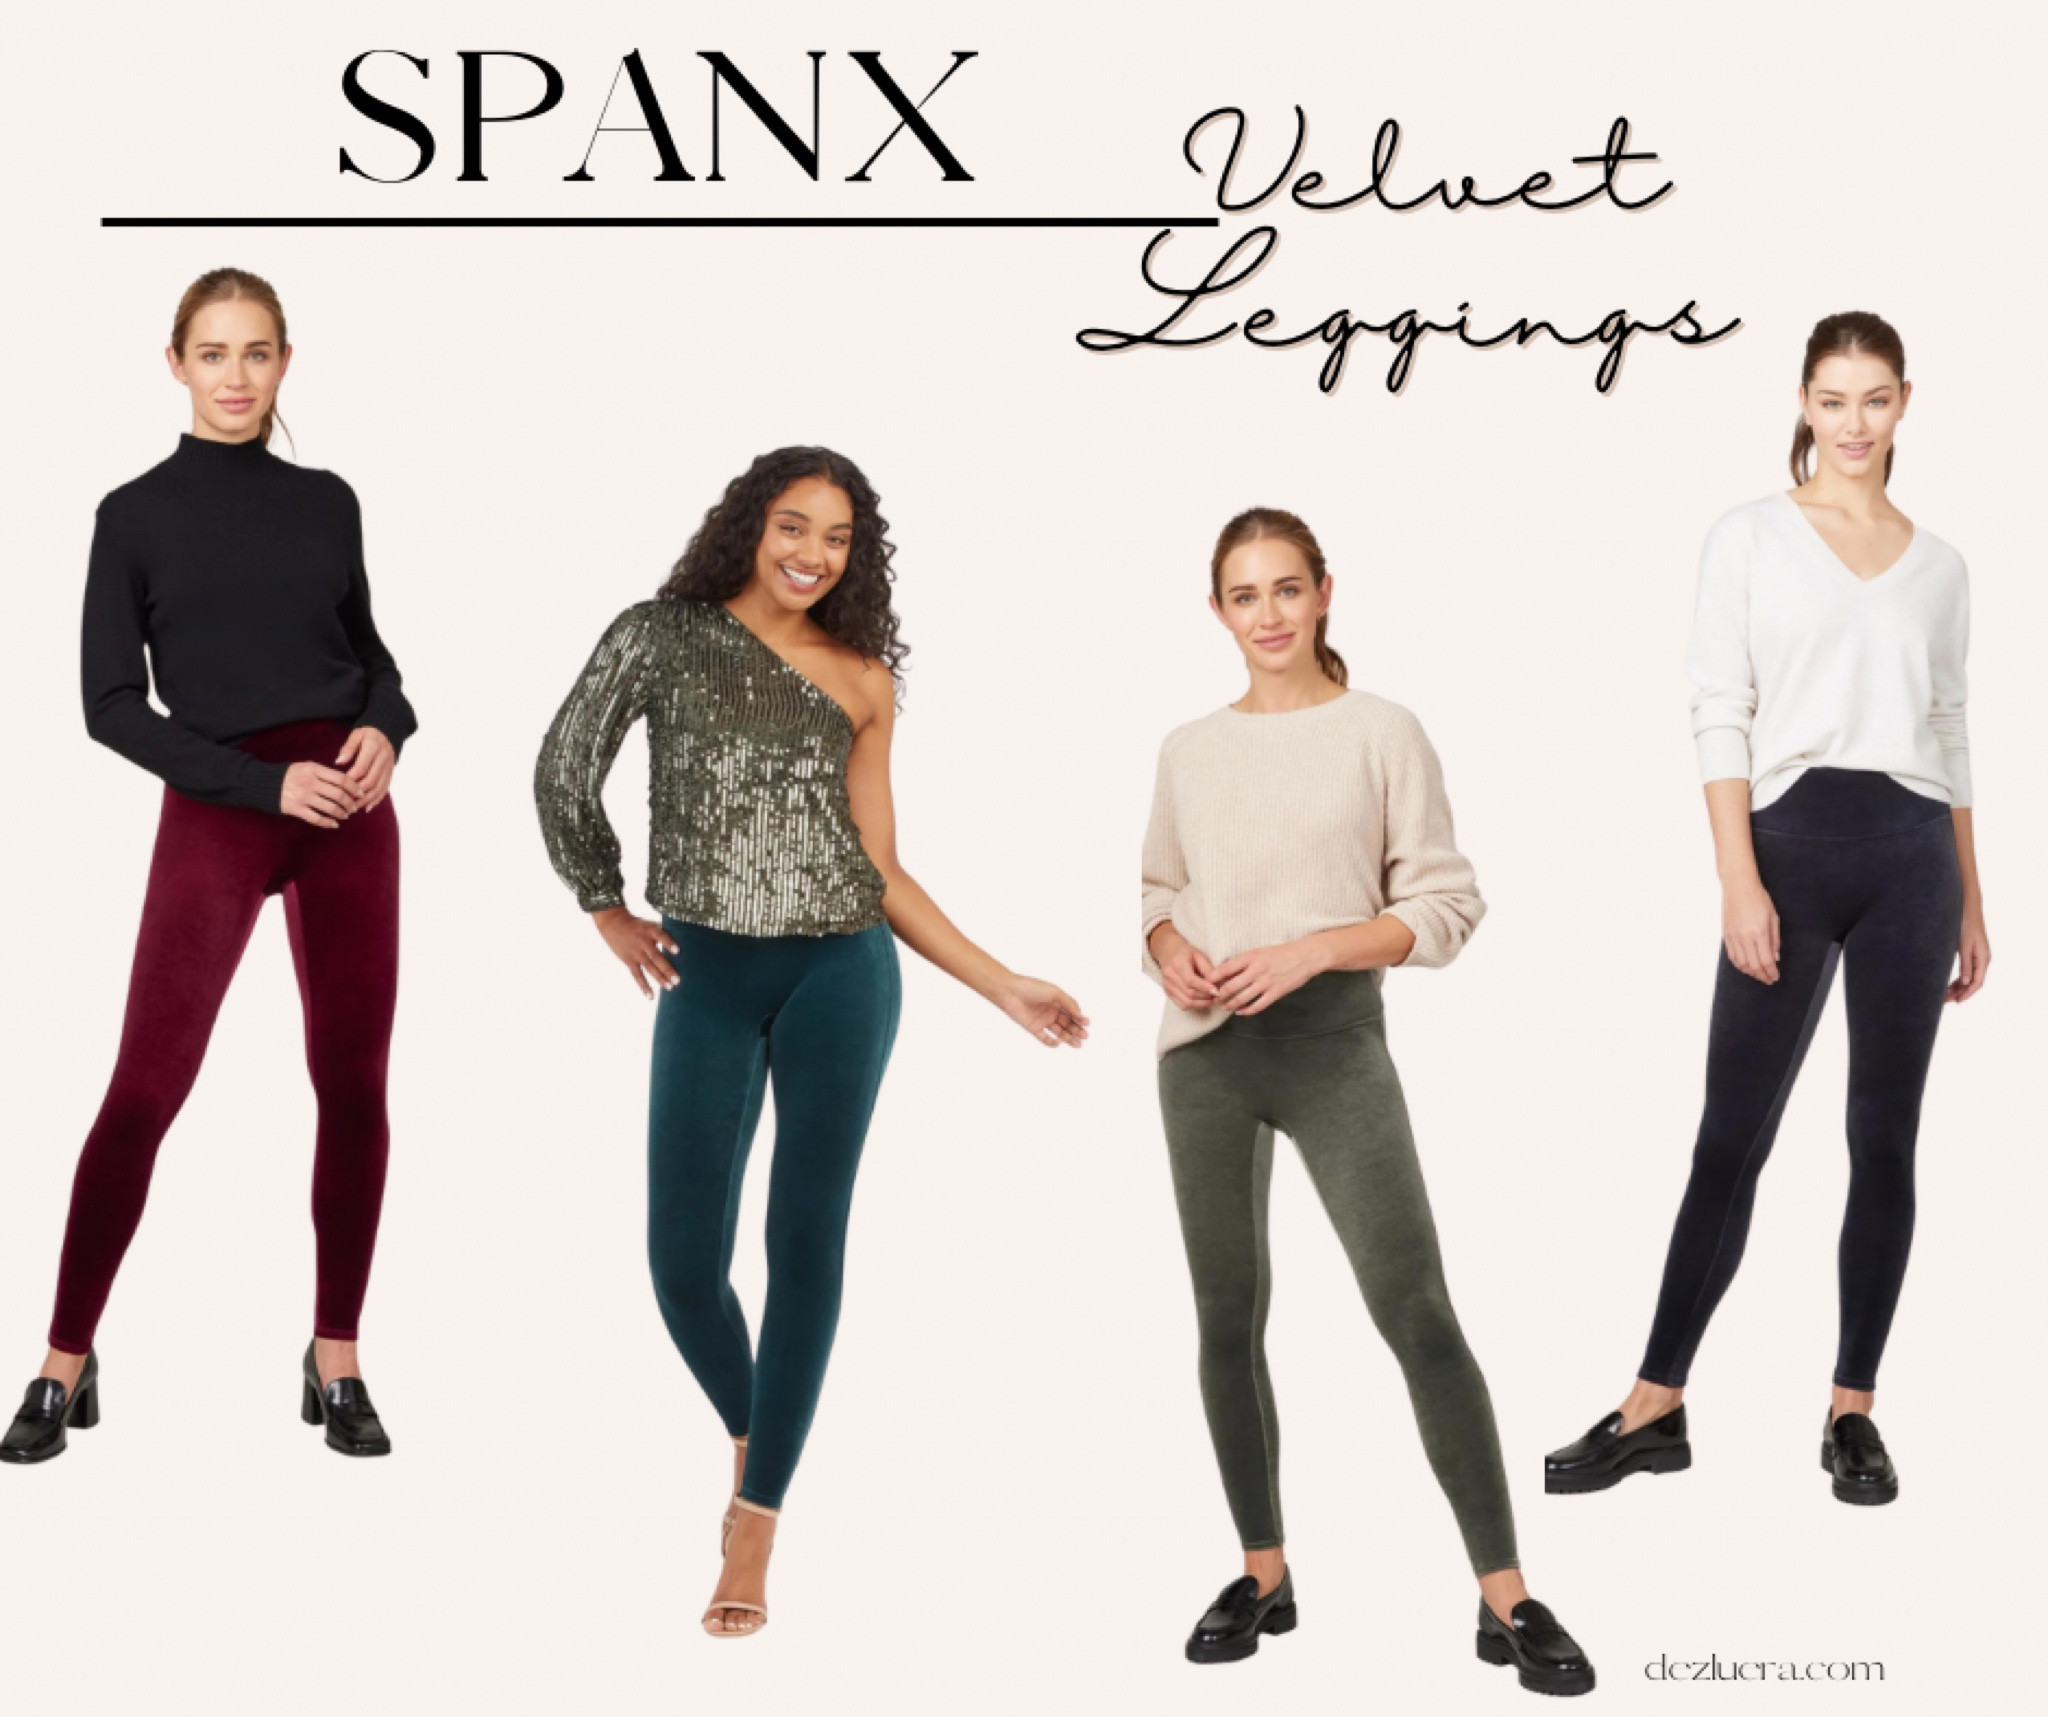 SPANX - Velvet leggings